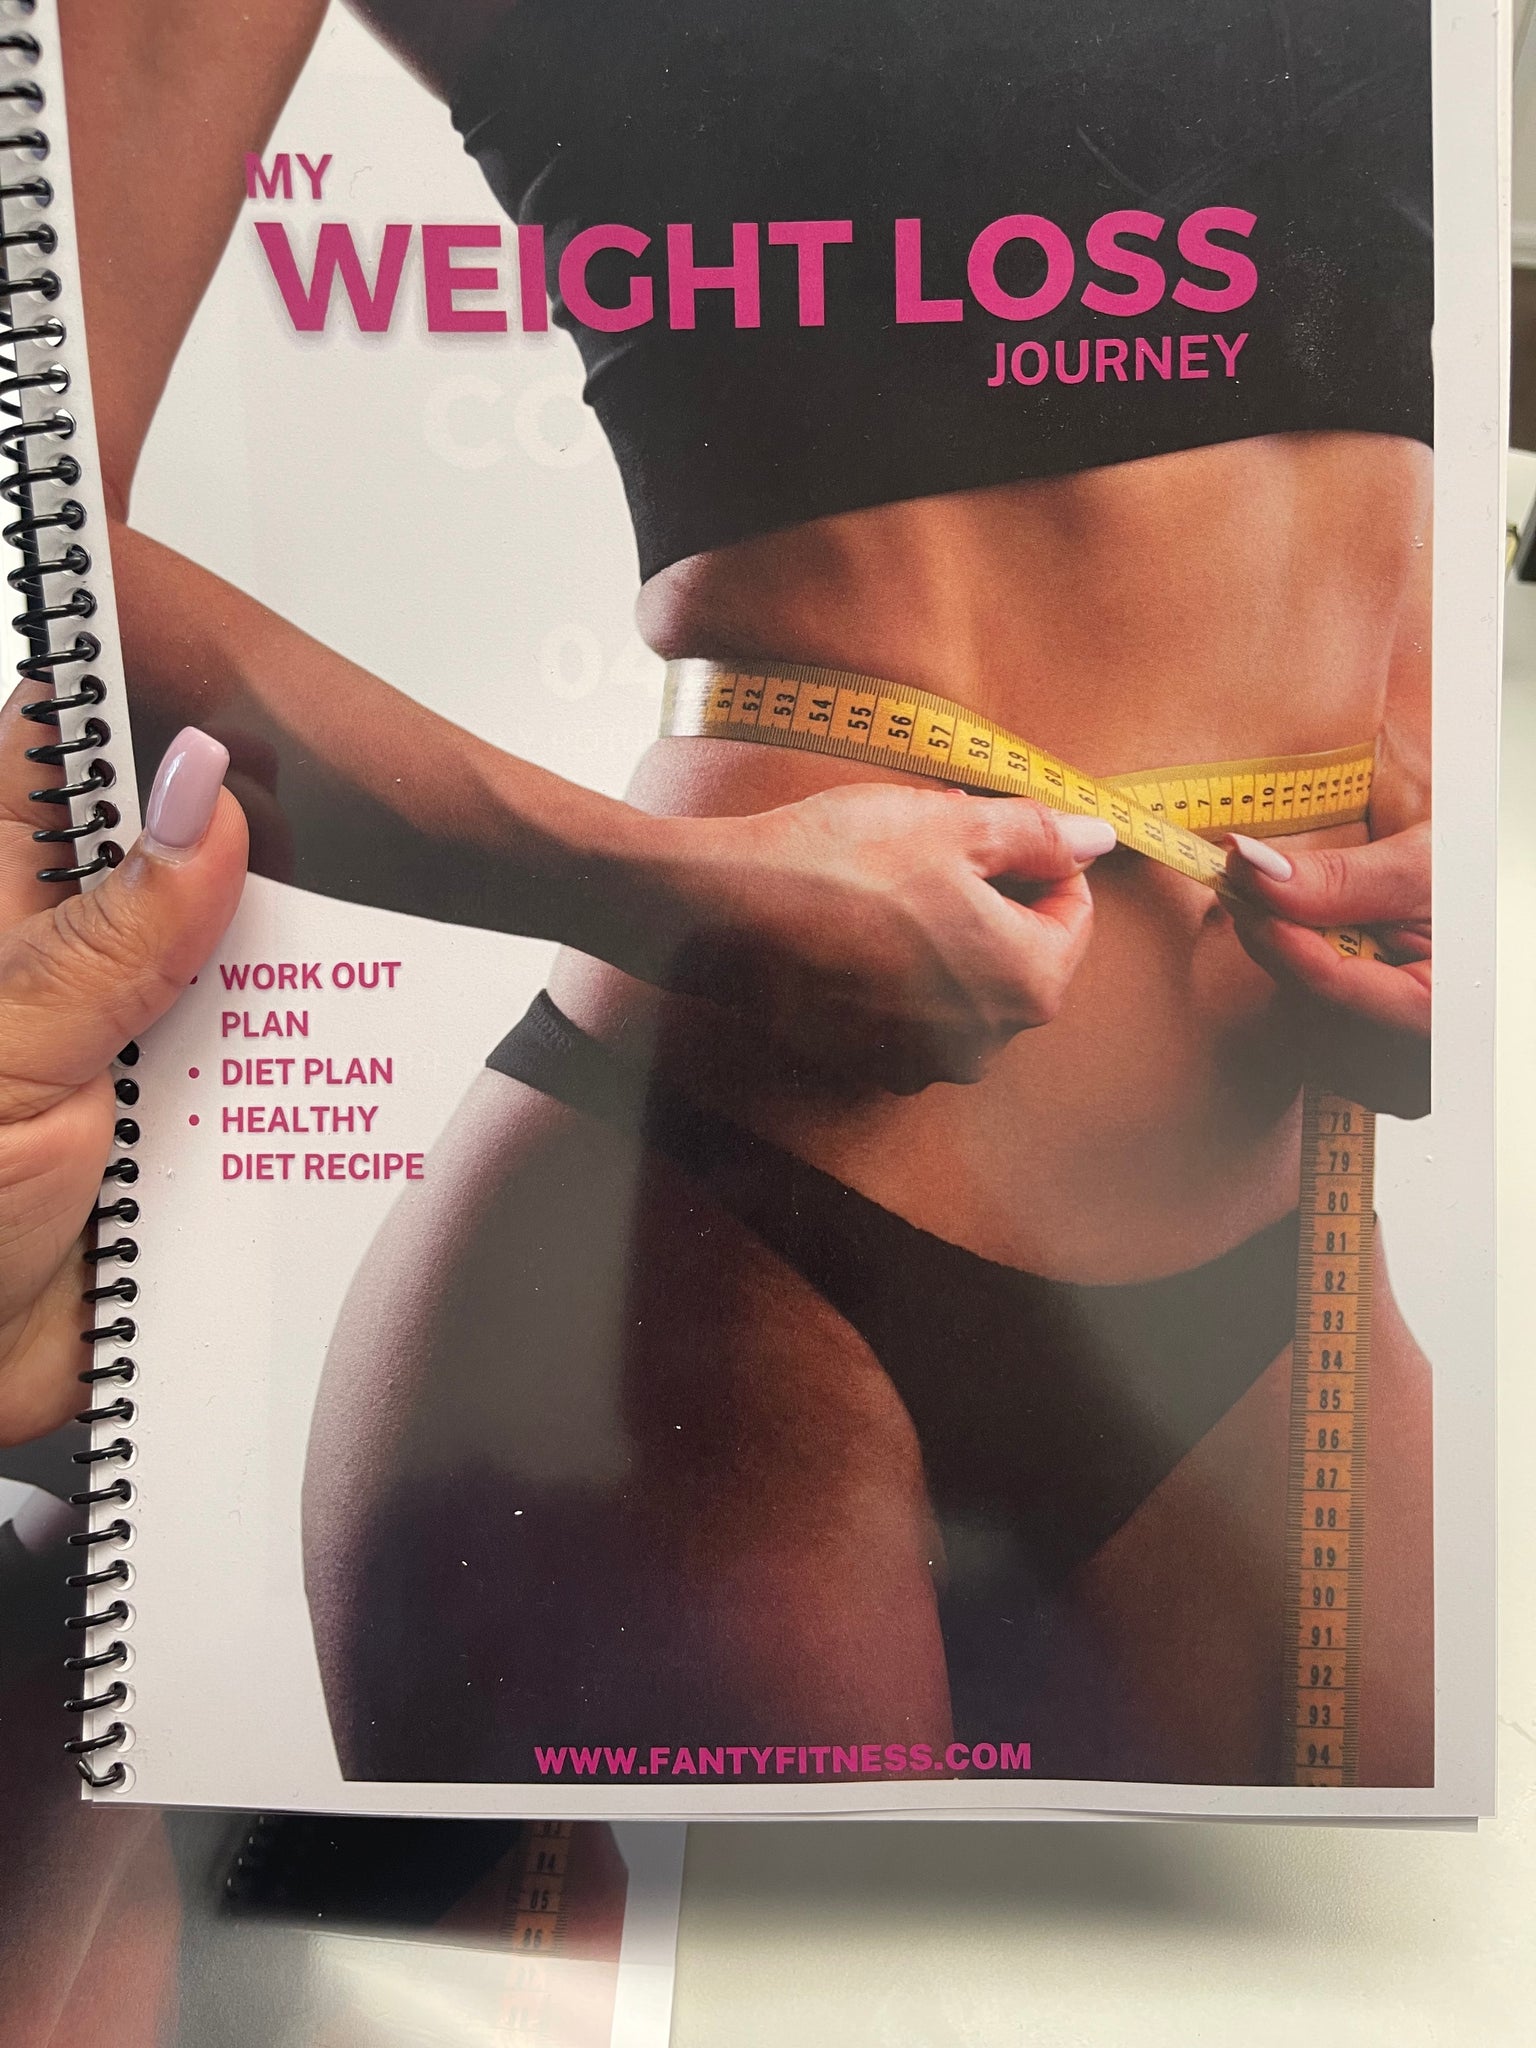 Weightloss Journal